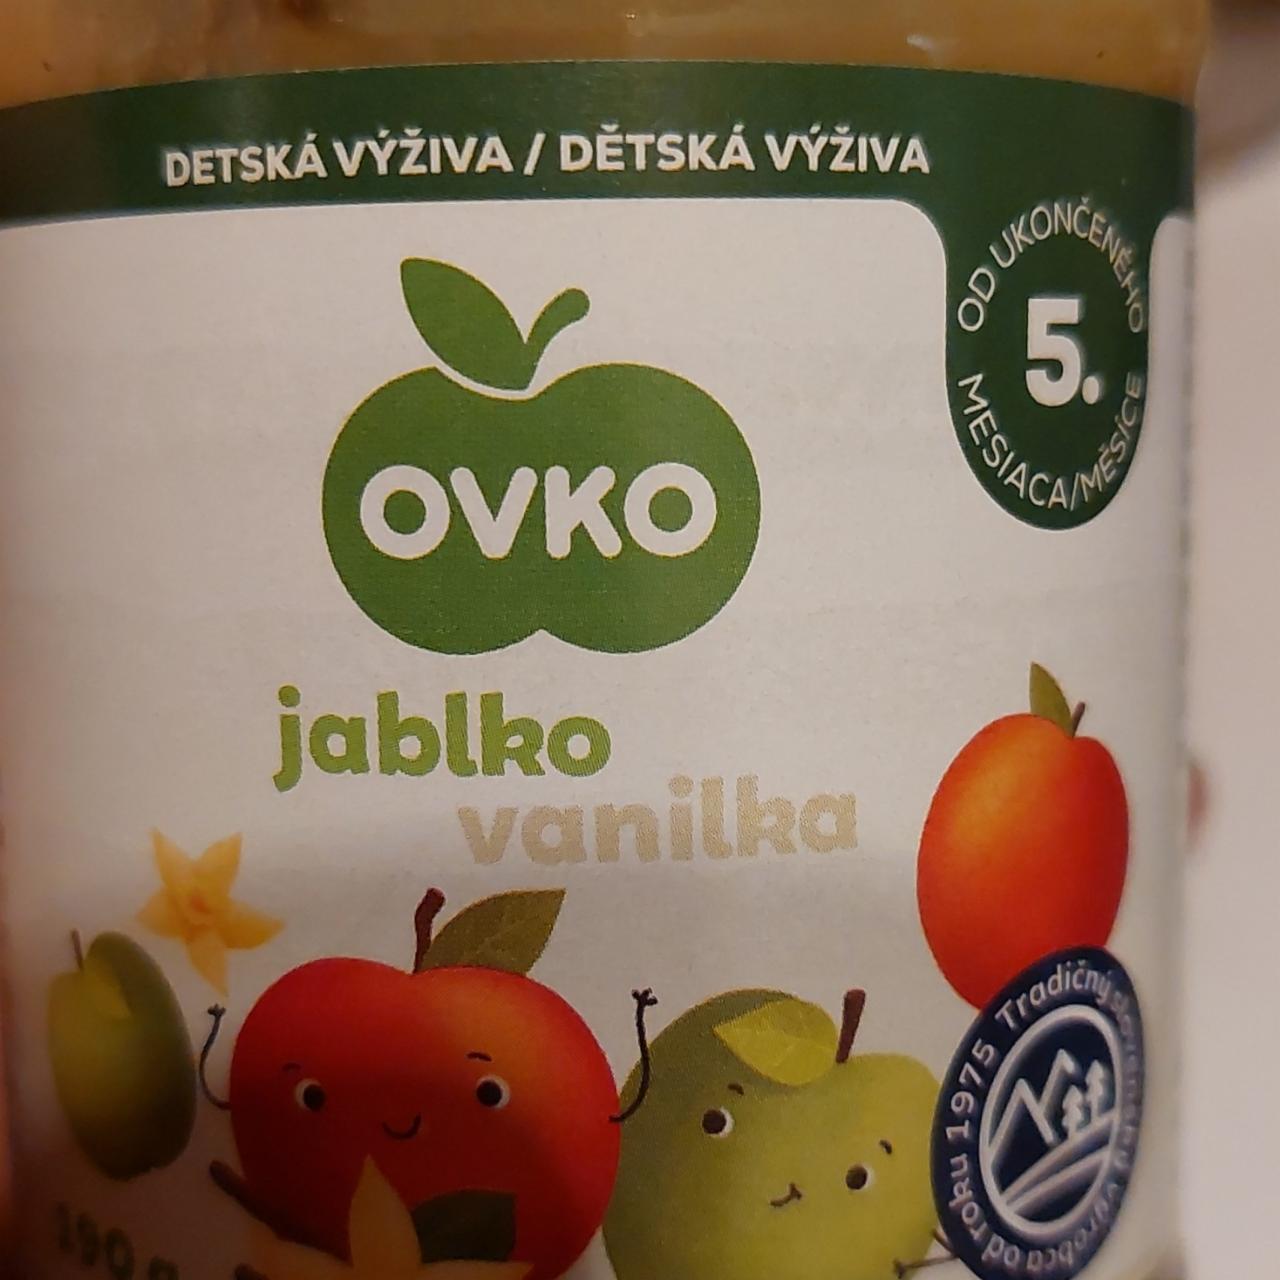 Fotografie - Detská výživa jablko vanilka Ovko